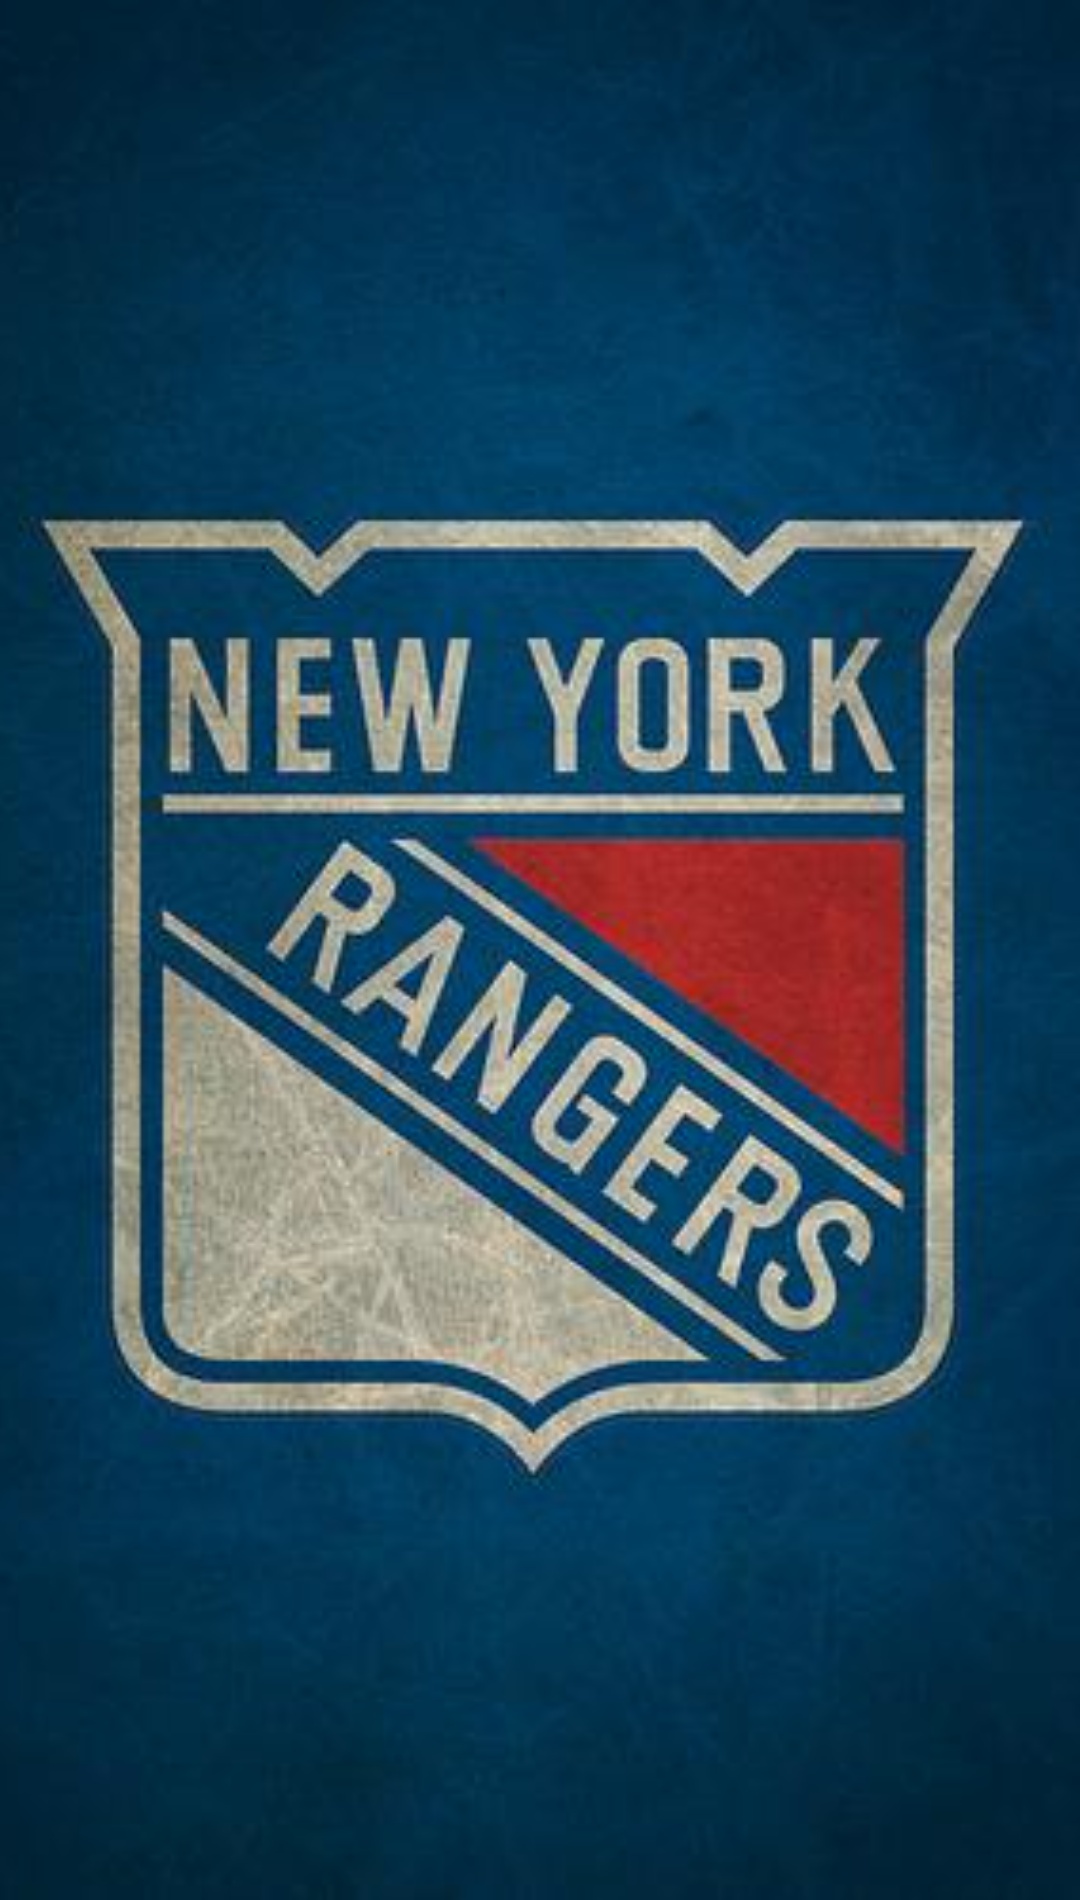 New York Rangers Full HD Wallpaper